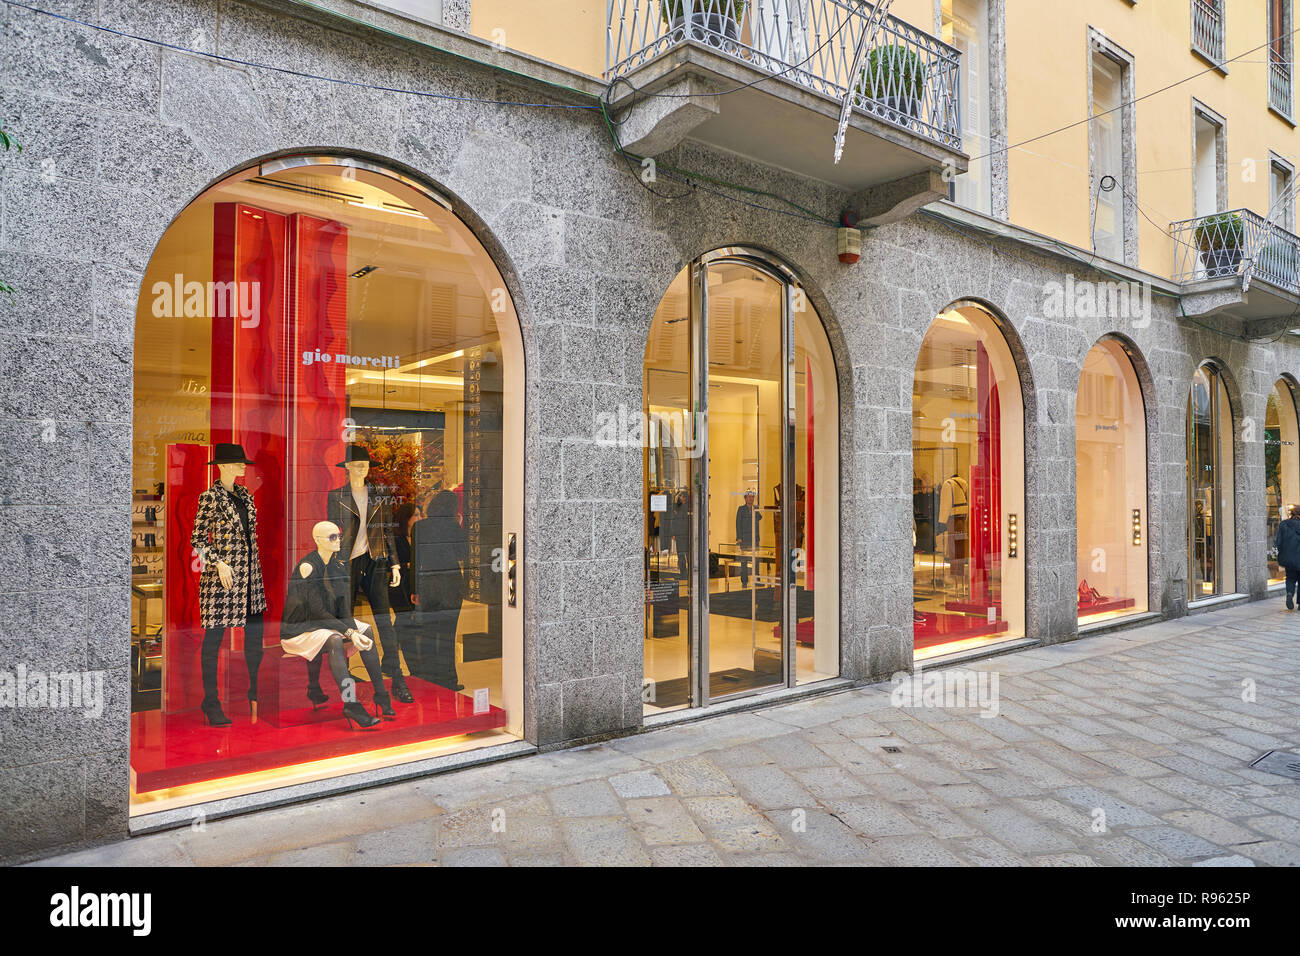 Italia milan milano ropa moda fotografías e imágenes de alta resolución -  Página 4 - Alamy